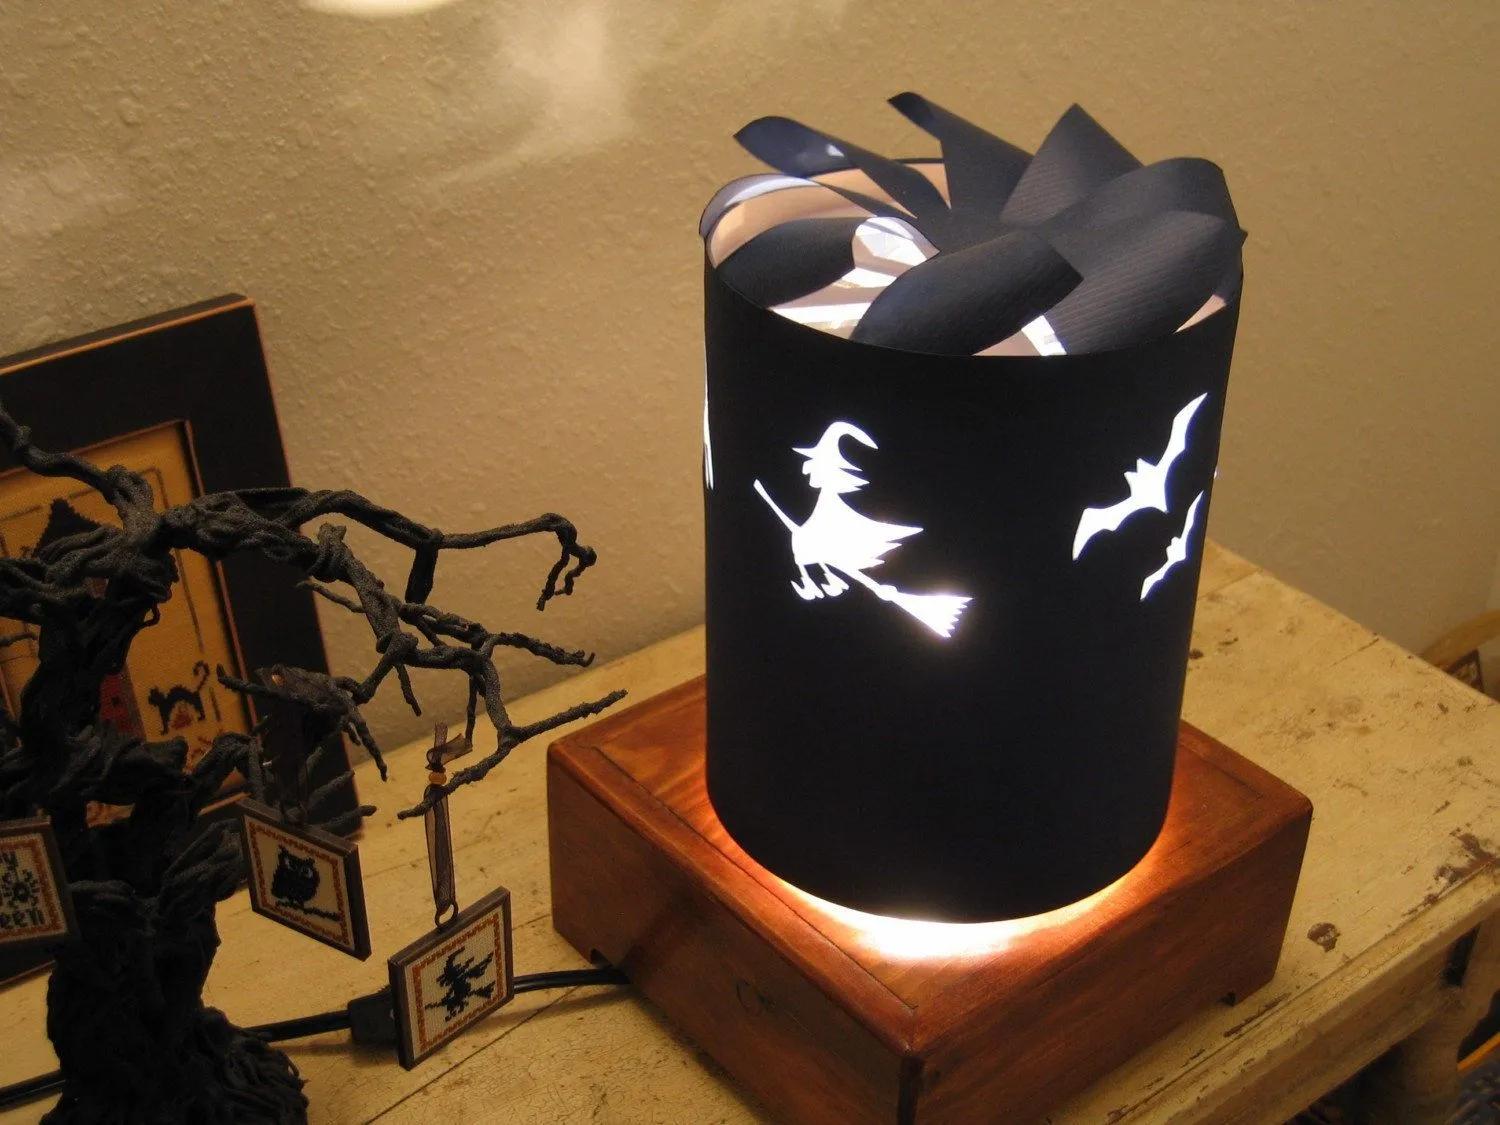 Spinning Lamp Shade Halloween | Etsy | Diy lamp shade, Diy lamp, Lamp shade